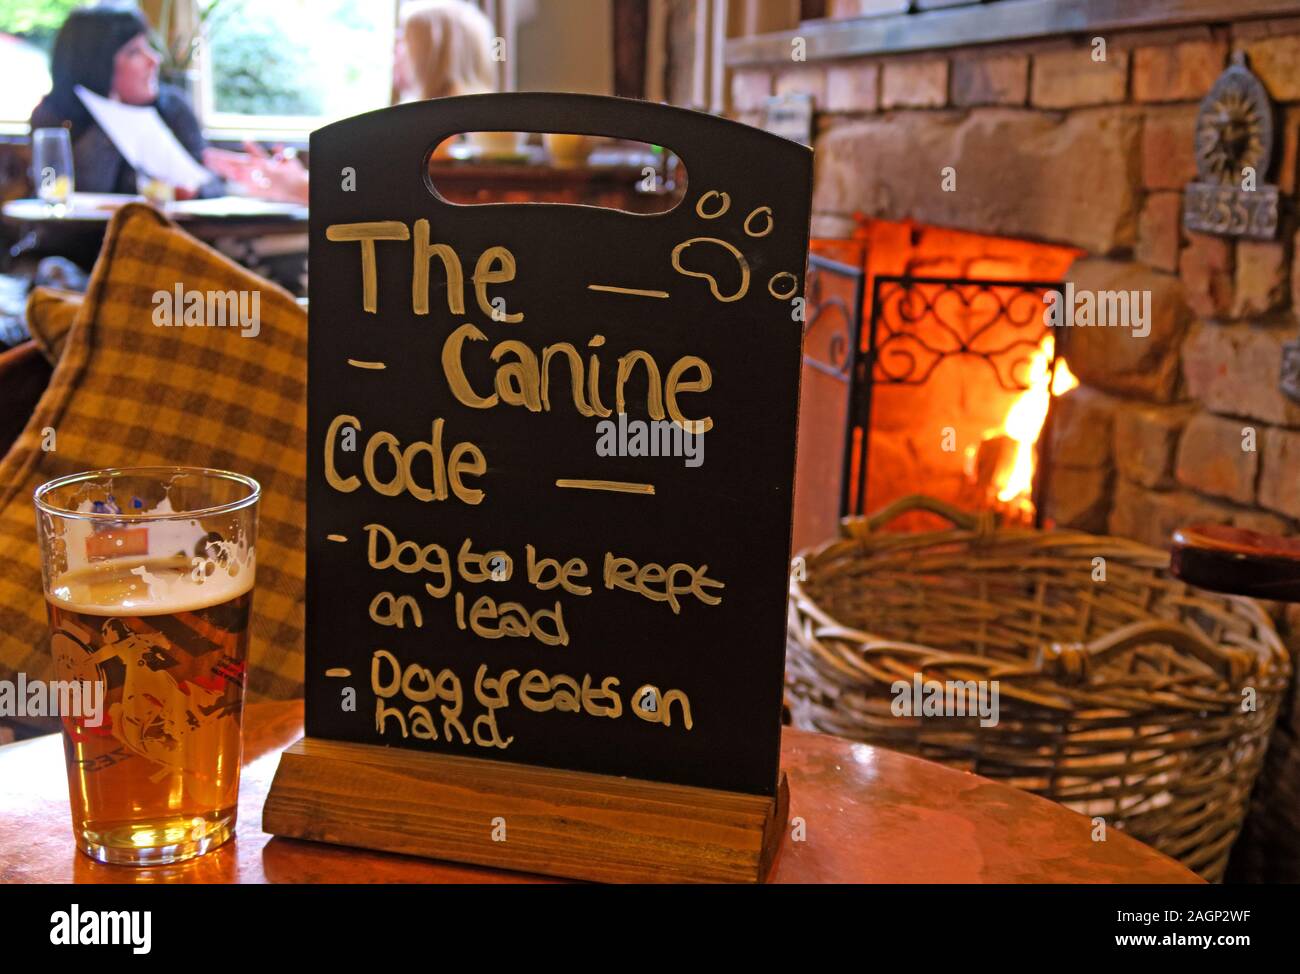 Pubs pour chiens, le code canin, chien à garder en tête, friandises pour chiens à portée de main, Cheshire, Angleterre, Royaume-Uni Banque D'Images